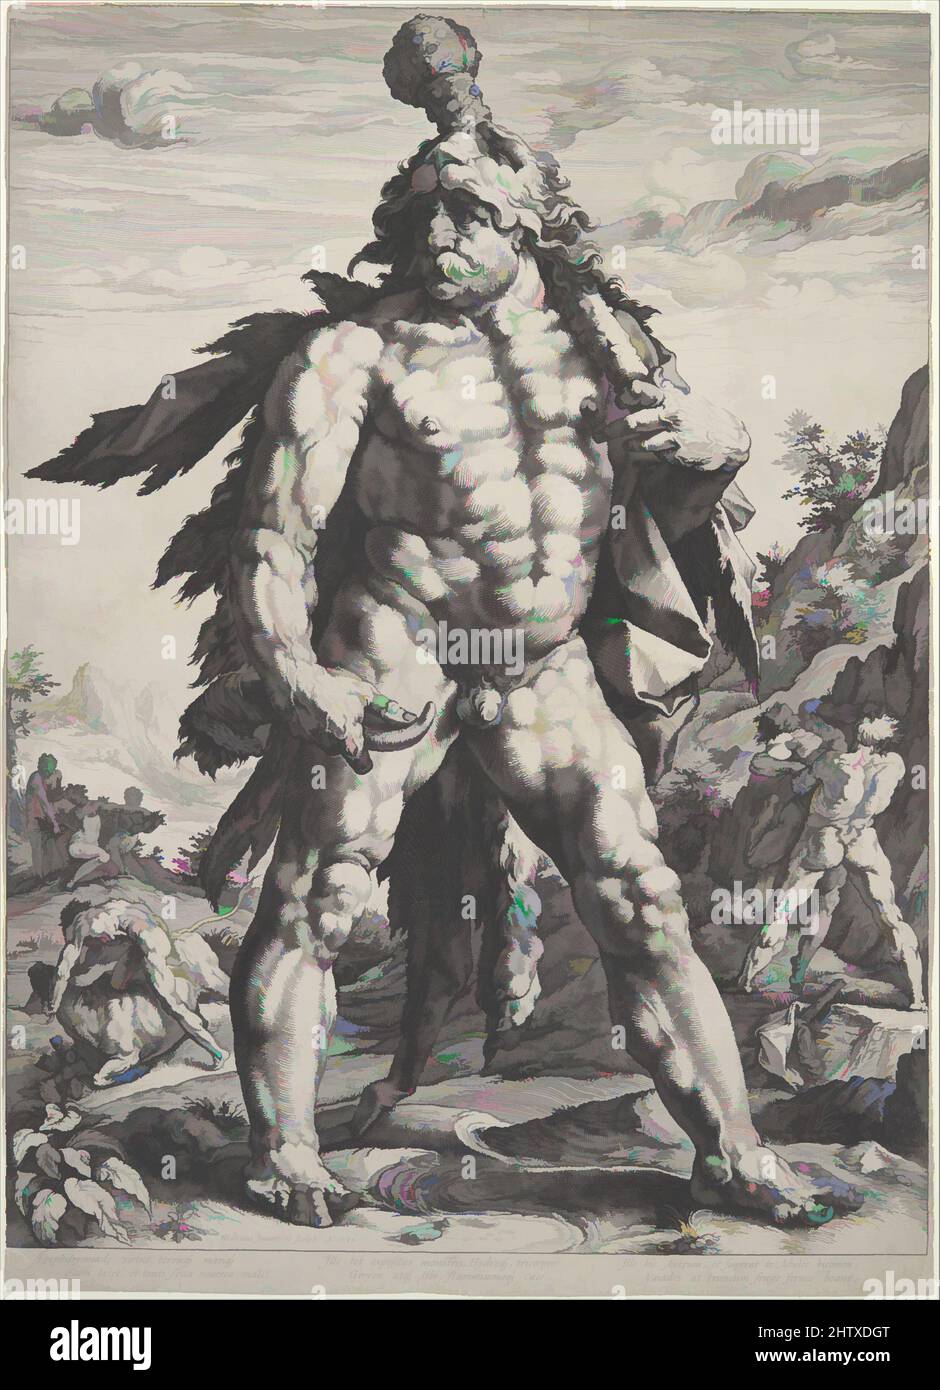 Arte ispirata ai grandi Ercole, 1589, incisione, 21 7/8 x 15 7/8 poll. (55,5 x 40,4 cm), Prints, Hendrick Goltzius (Netherlandish, Mühlbracht 1558–1617 Haarlem), questa incisione notevole è stata a lungo conosciuta come il Knollenman, o uomo bulbo. Mostra la figura di Goltzius, la figura del muscolo-rigonfiamento, opere classiche modernizzate da Artotop con un tuffo di modernità. Forme, colore e valore, impatto visivo accattivante sulle emozioni artistiche attraverso la libertà delle opere d'arte in modo contemporaneo. Un messaggio senza tempo che persegue una nuova direzione selvaggiamente creativa. Artisti che si rivolgono al supporto digitale e creano l'NFT Artotop Foto Stock